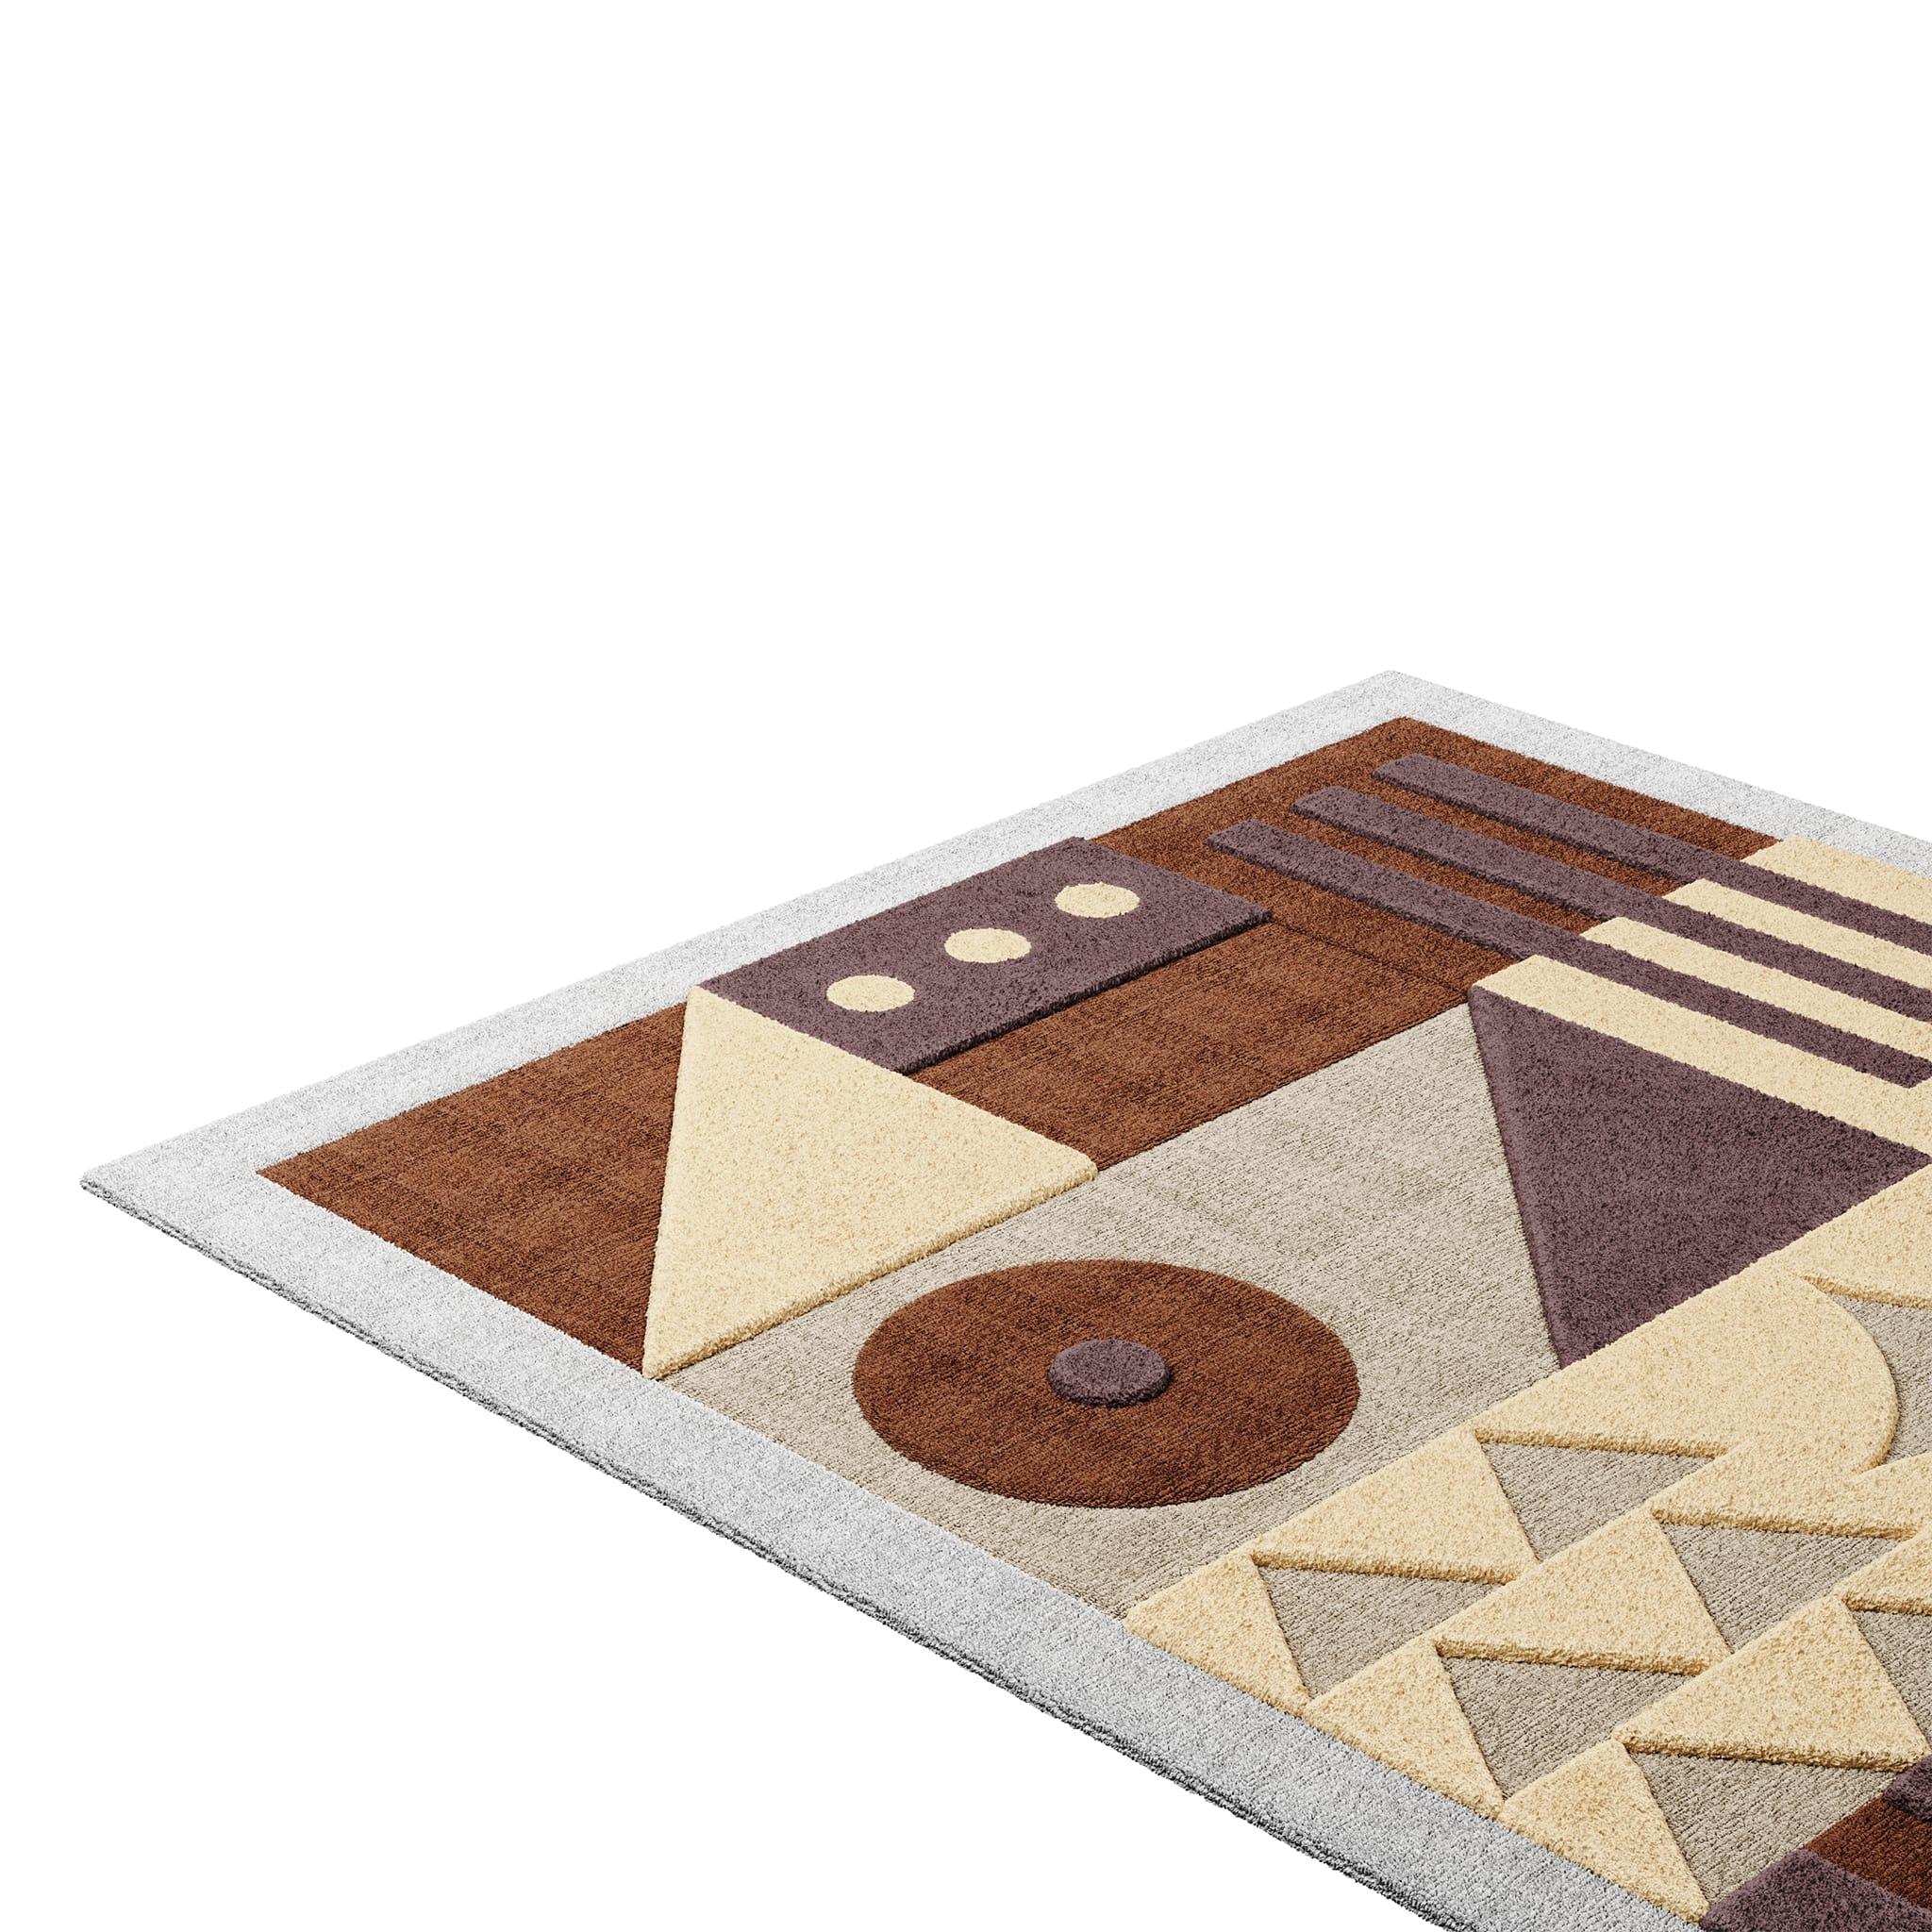 Tapis Pastel #12 ist ein pastellfarbener Teppich, der das Flair der Jahrhundertmitte mit dem Stil von Memphis Design verbindet. Die Kombination aus gedeckten Farbtönen verleiht jedem Raum Helligkeit und Komfort. 
Dieser pastellfarbene Teppich hat